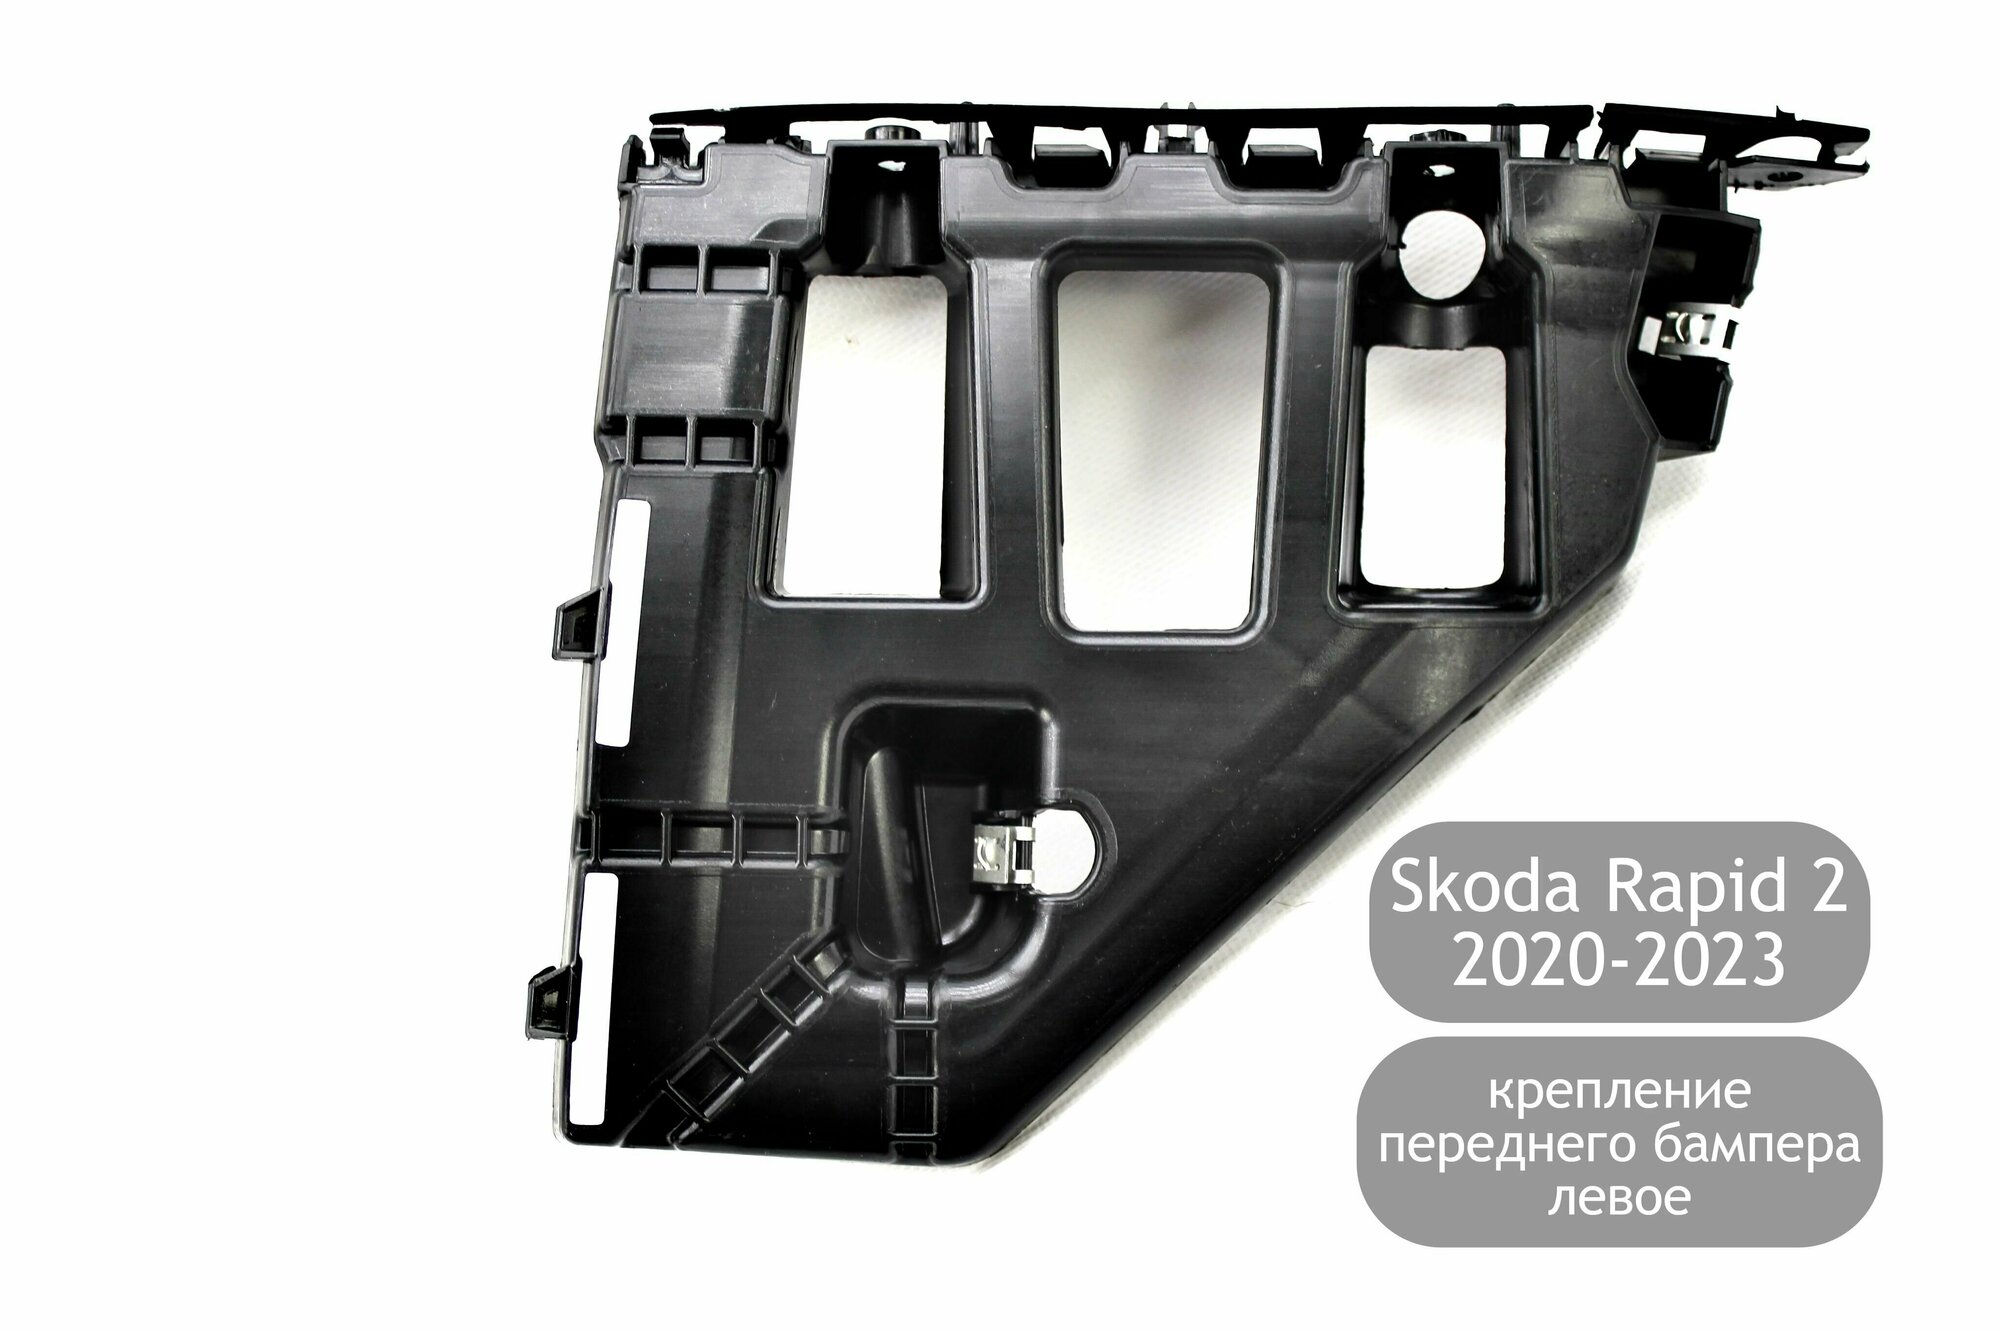 Крепление (кронштейн) переднего бампера левое для Skoda Rapid 2 2020-2023